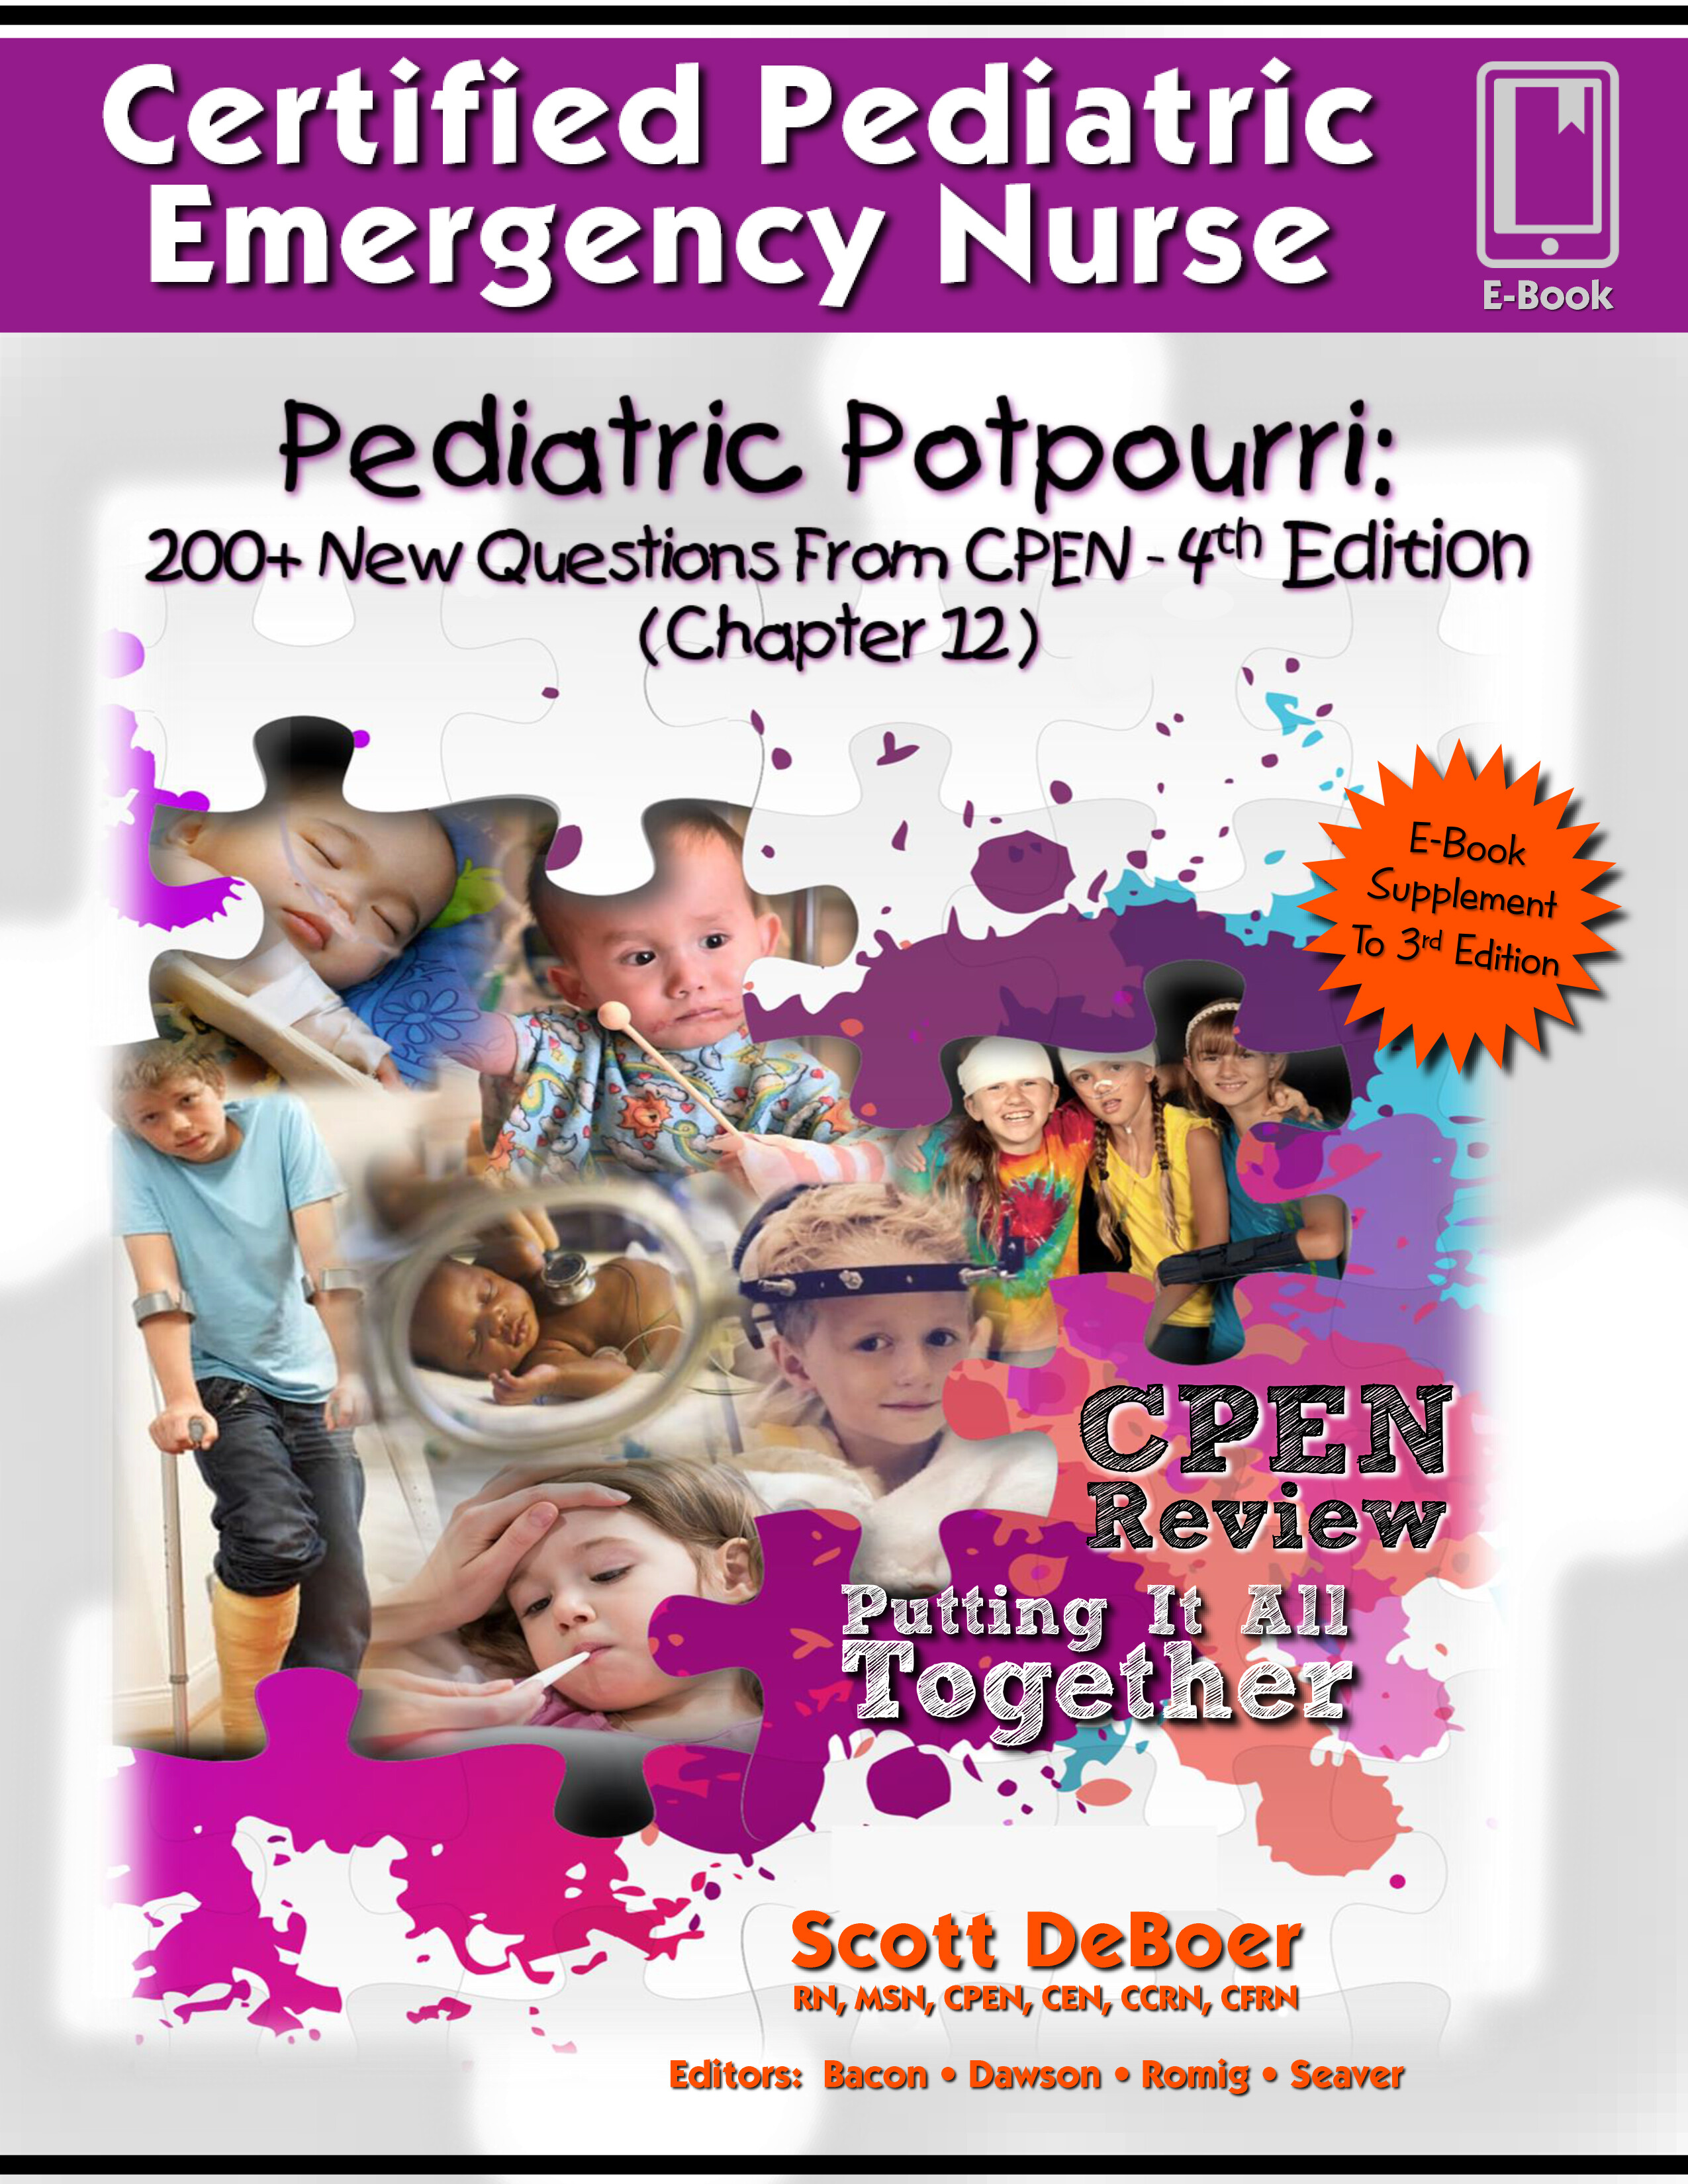 Pediatric Potpourri 200+ New CPEN Questions